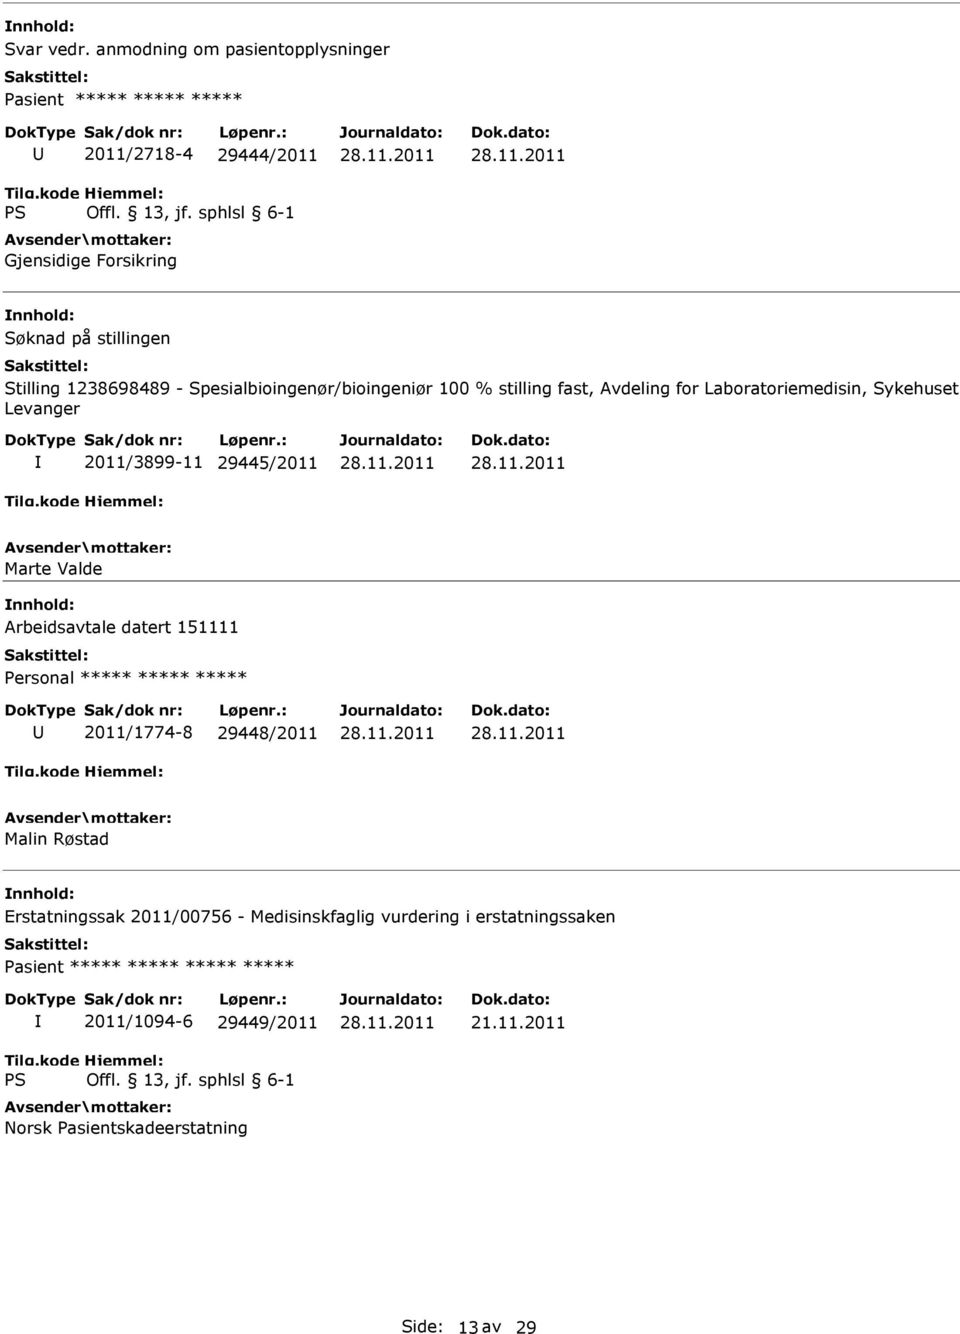 1238698489 - Spesialbioingenør/bioingeniør 100 % stilling fast, Avdeling for Laboratoriemedisin, Sykehuset Levanger 2011/3899-11